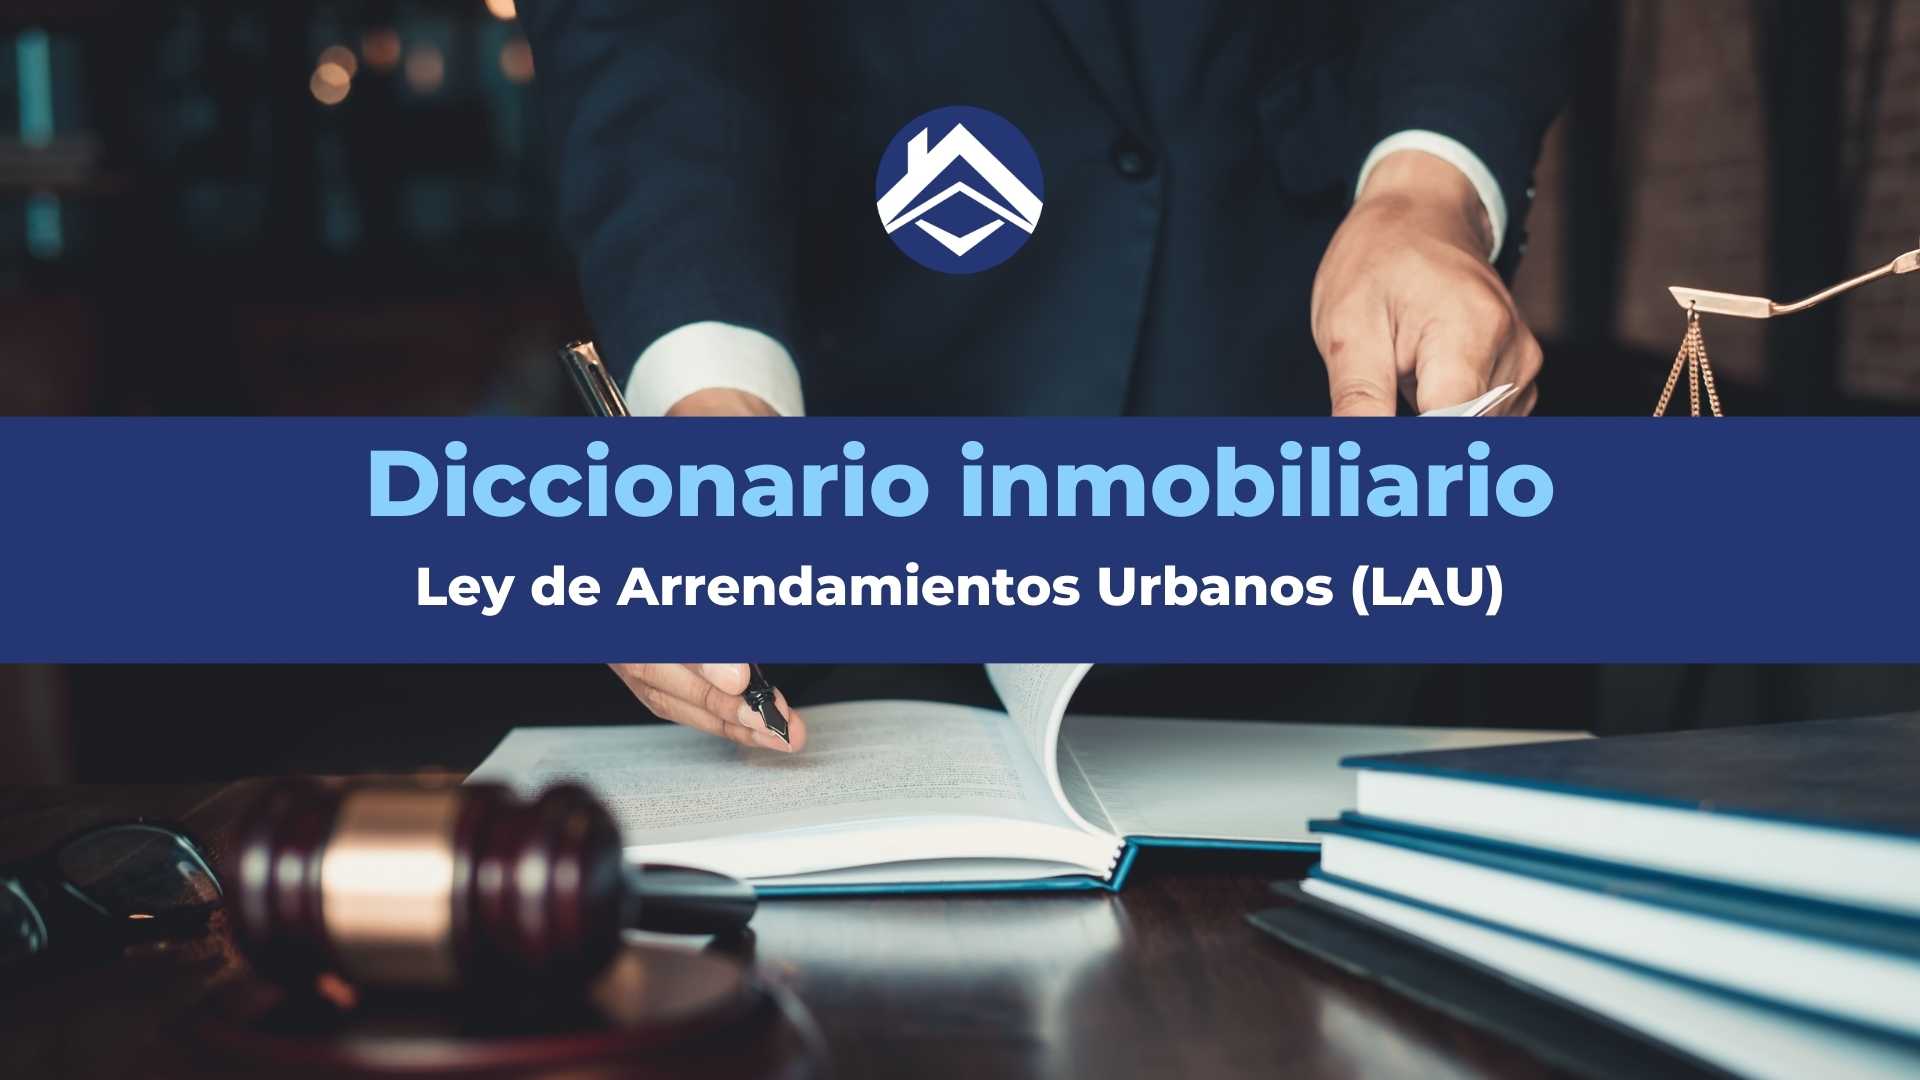 Ley de Arrendamientos Urbanos (LAU): ¿Qué es?